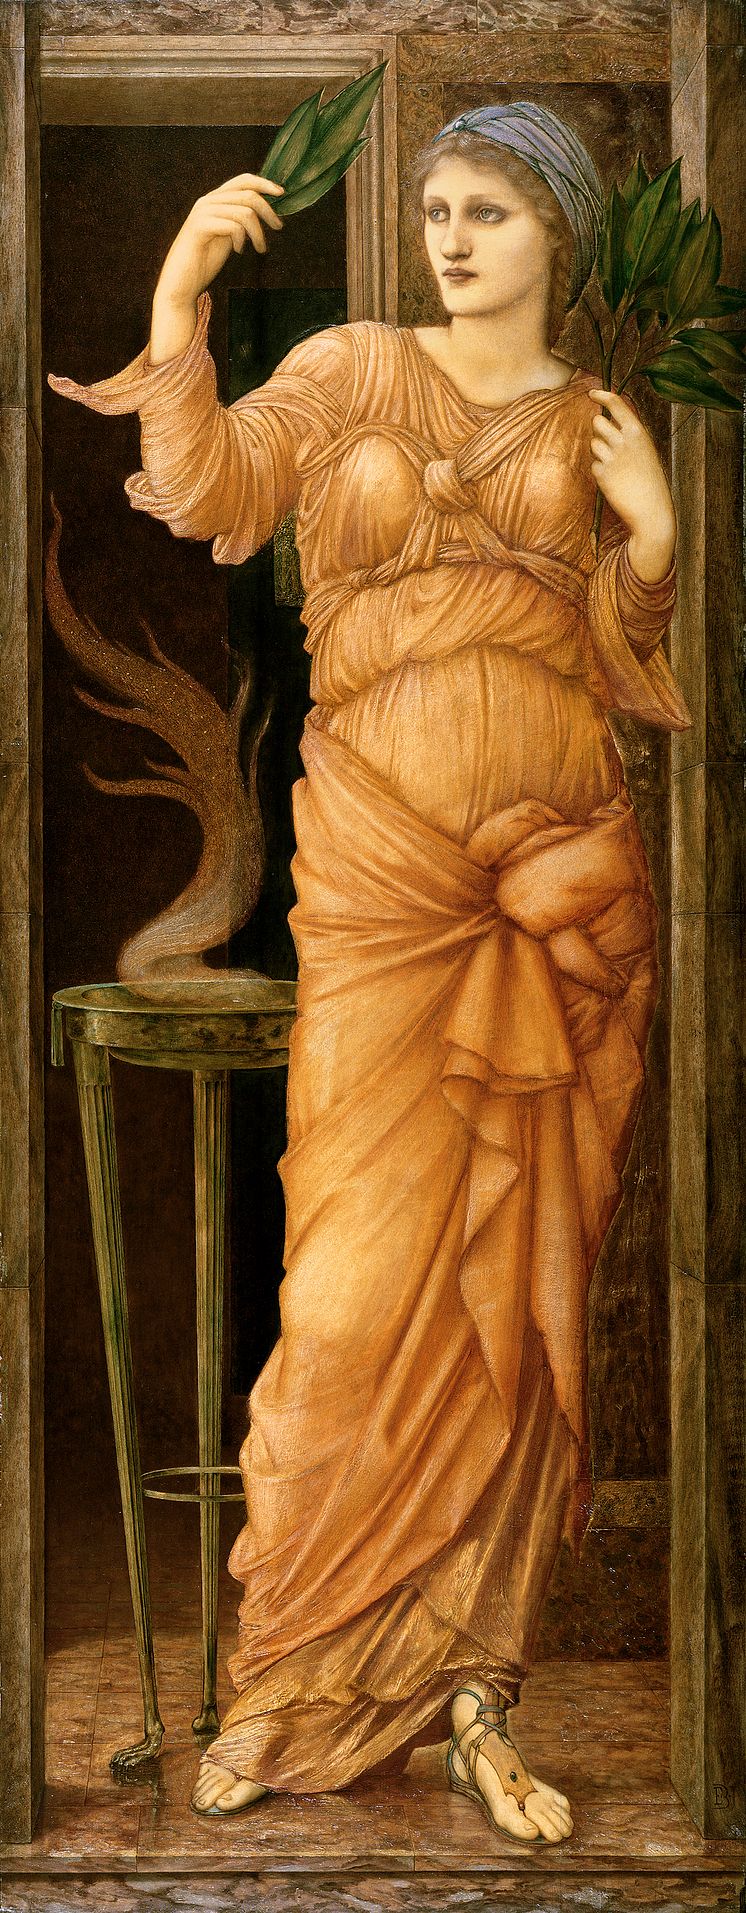 Edward Burne-Jones: Sibylla Delphica (1886). Eier: Manchester Art Gallery